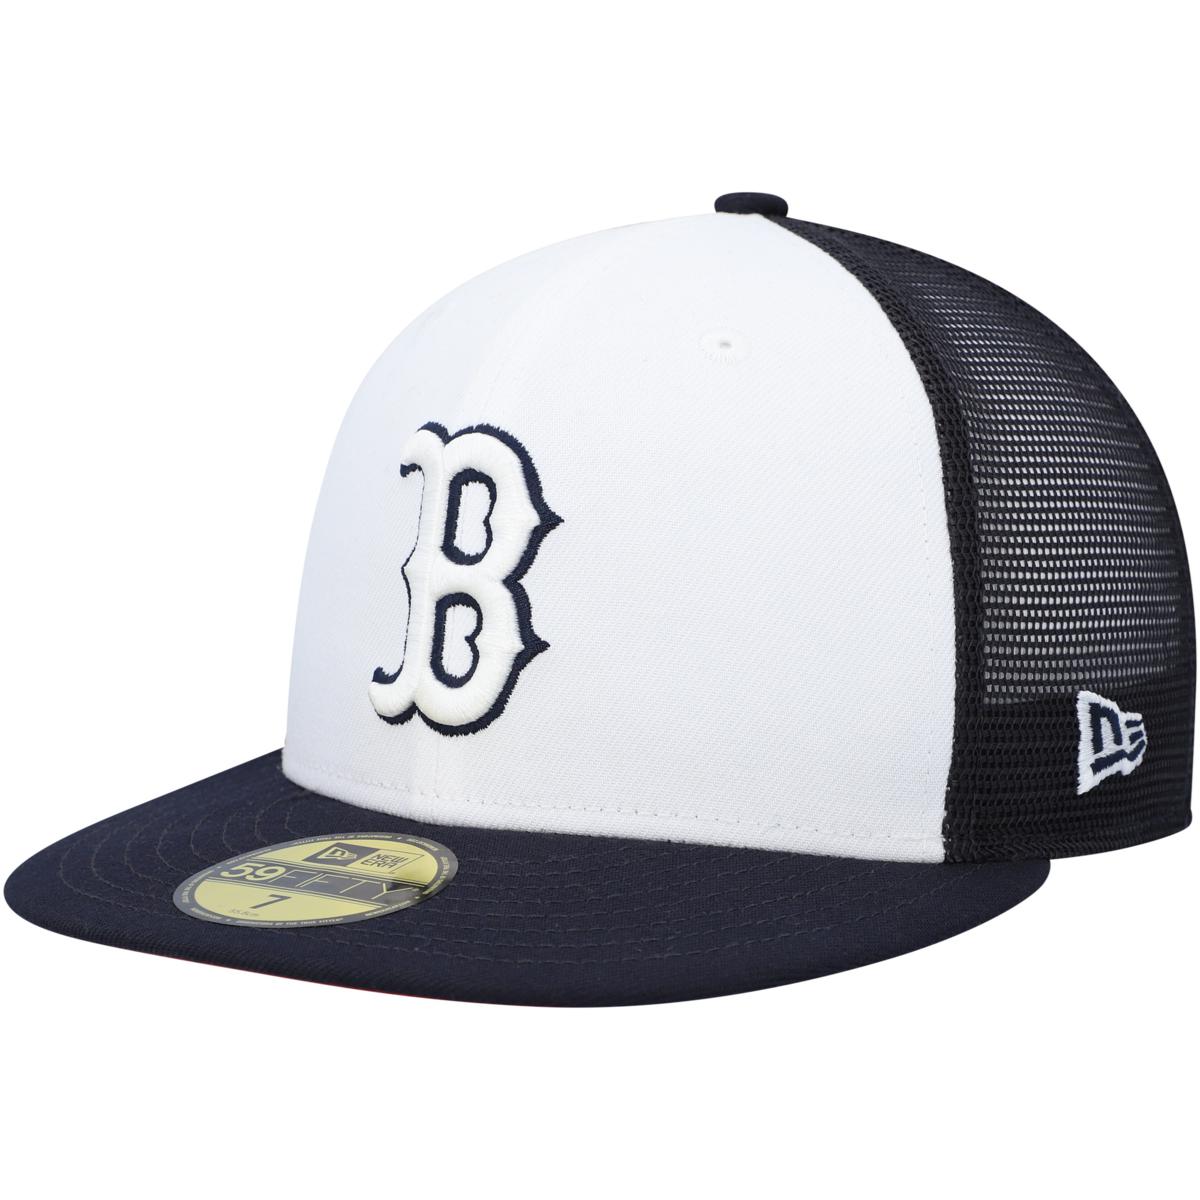 Mens Clothing - Baseball - Boston Red Sox